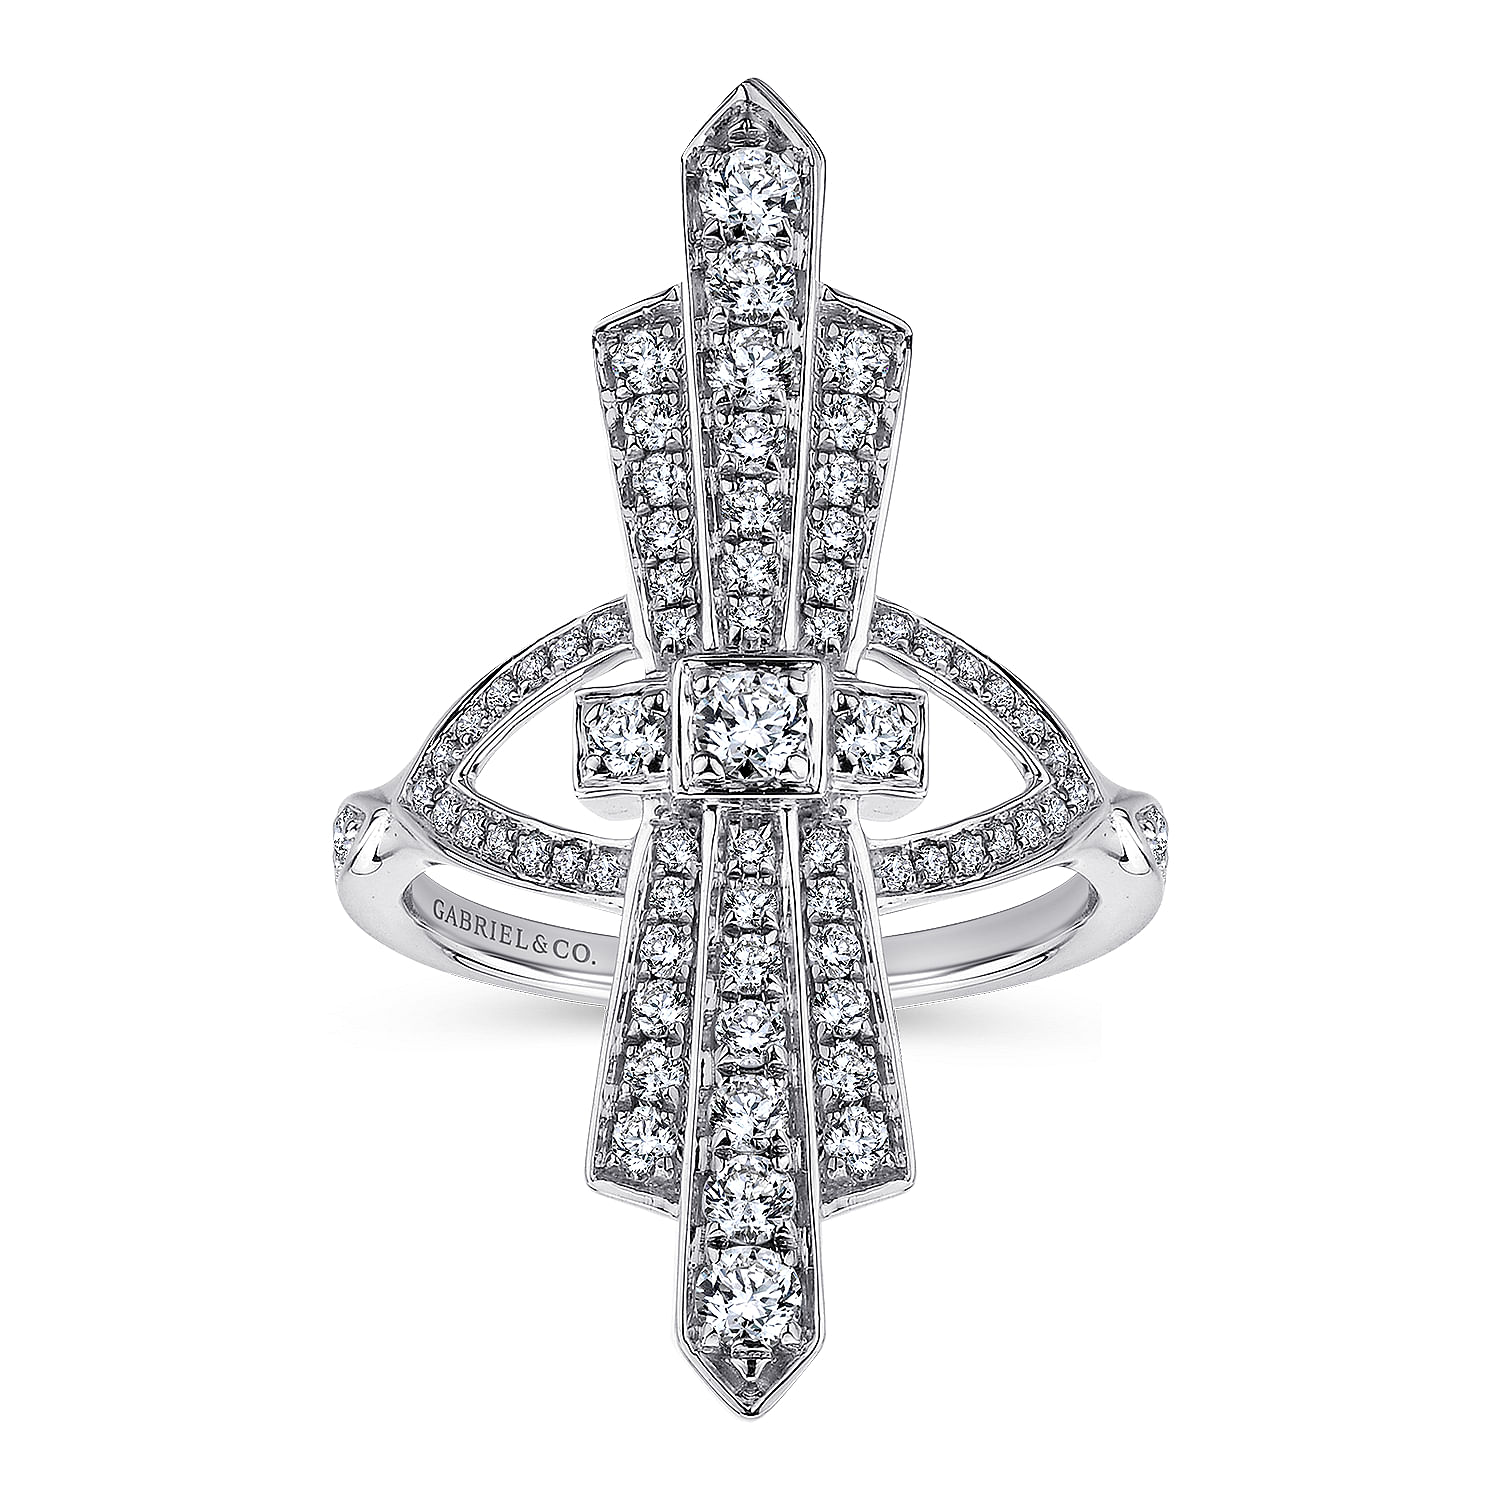 14K White Gold Art Deco Inspired Diamond Ring - 0.75 ct - Shot 4